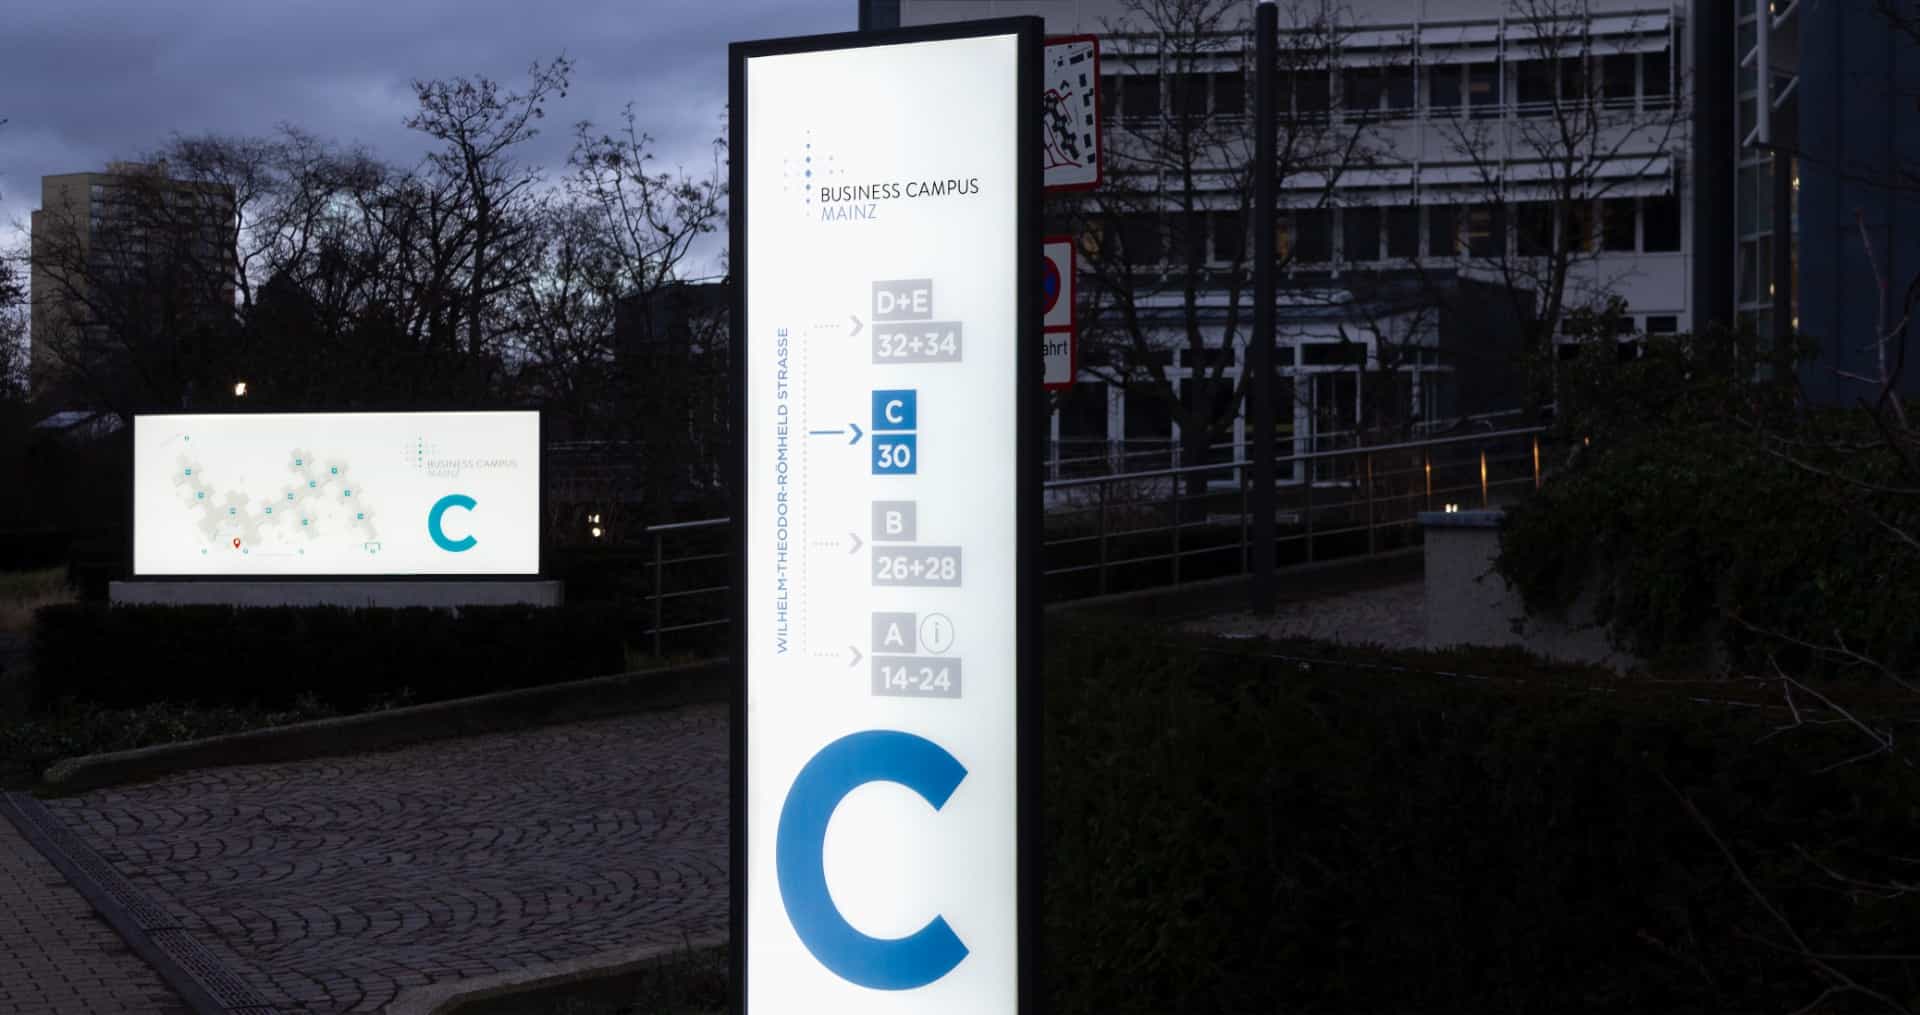 LED-Firmenschilder als Wegweiser zur Orientierung auf dem Business Campus Mainz. Die beleuchteten Pylone sind keine bloßen Werbetafeln, sondern weisen den Weg zu den einzelnen Gebäuden.